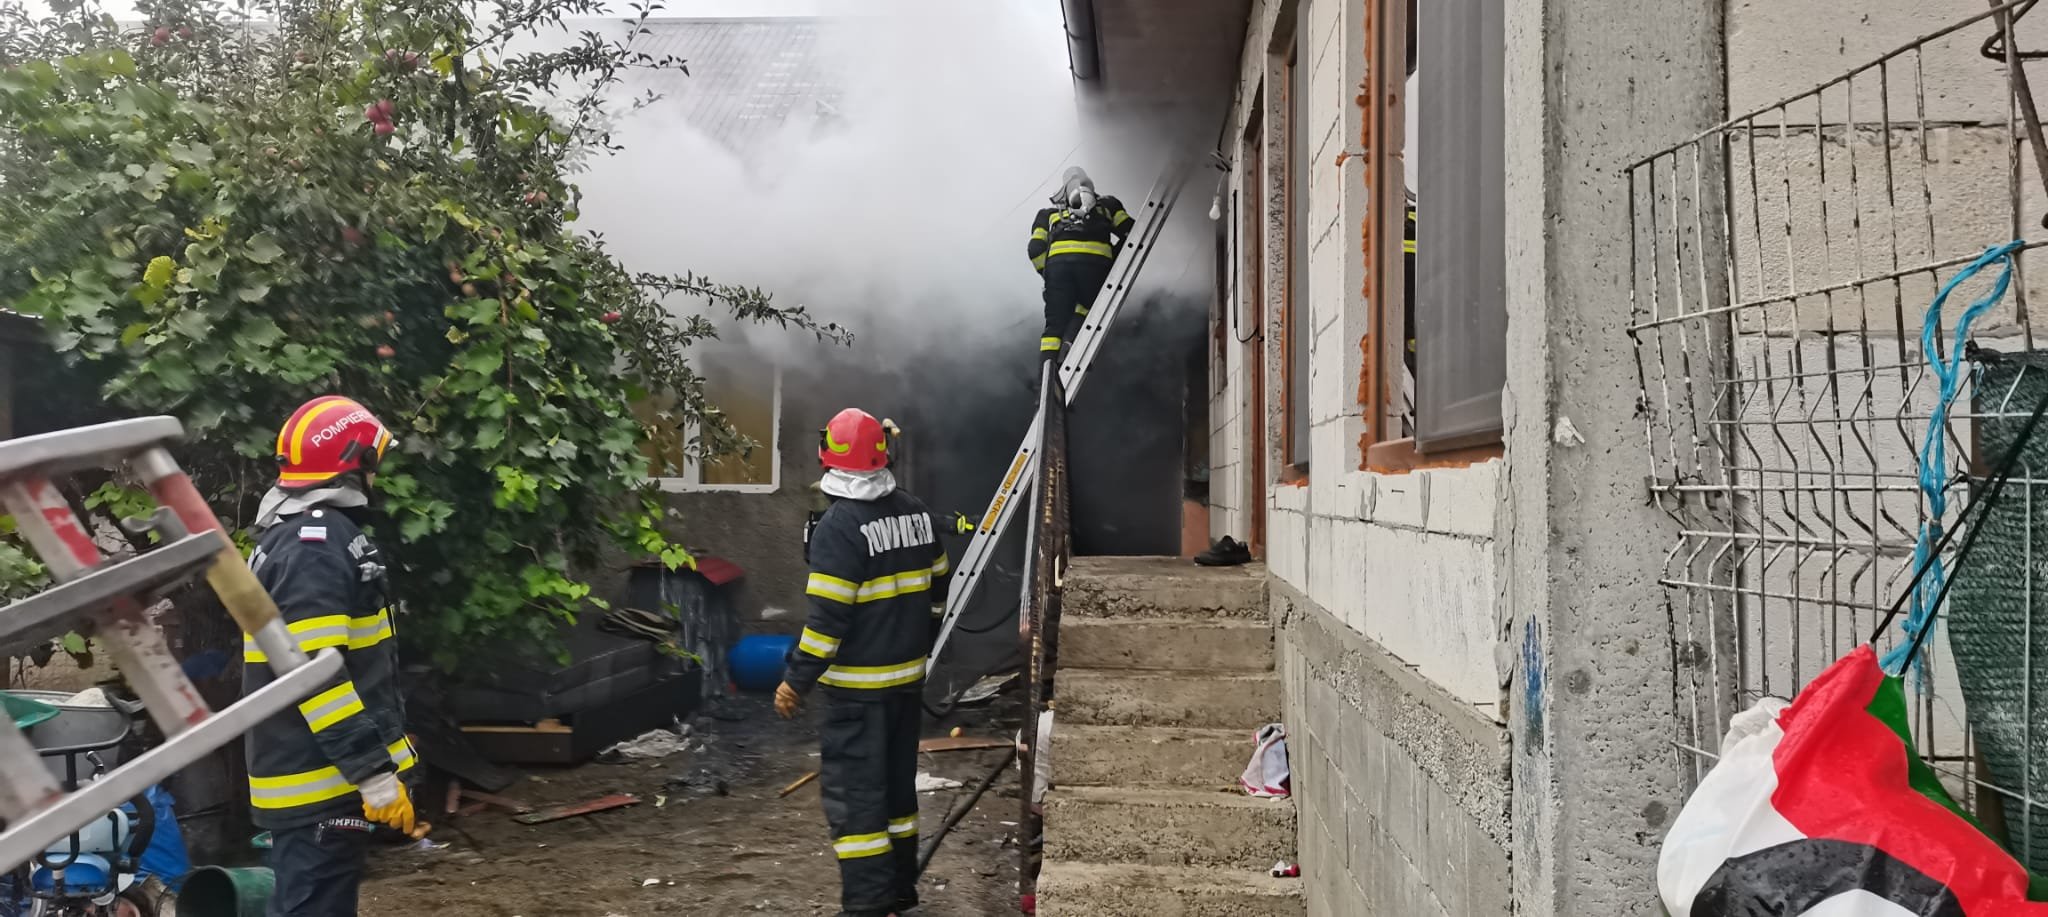  VIDEO – Alertă! Persoană carbonizată în urma unui incendiu care a avut loc în comuna Voineşti